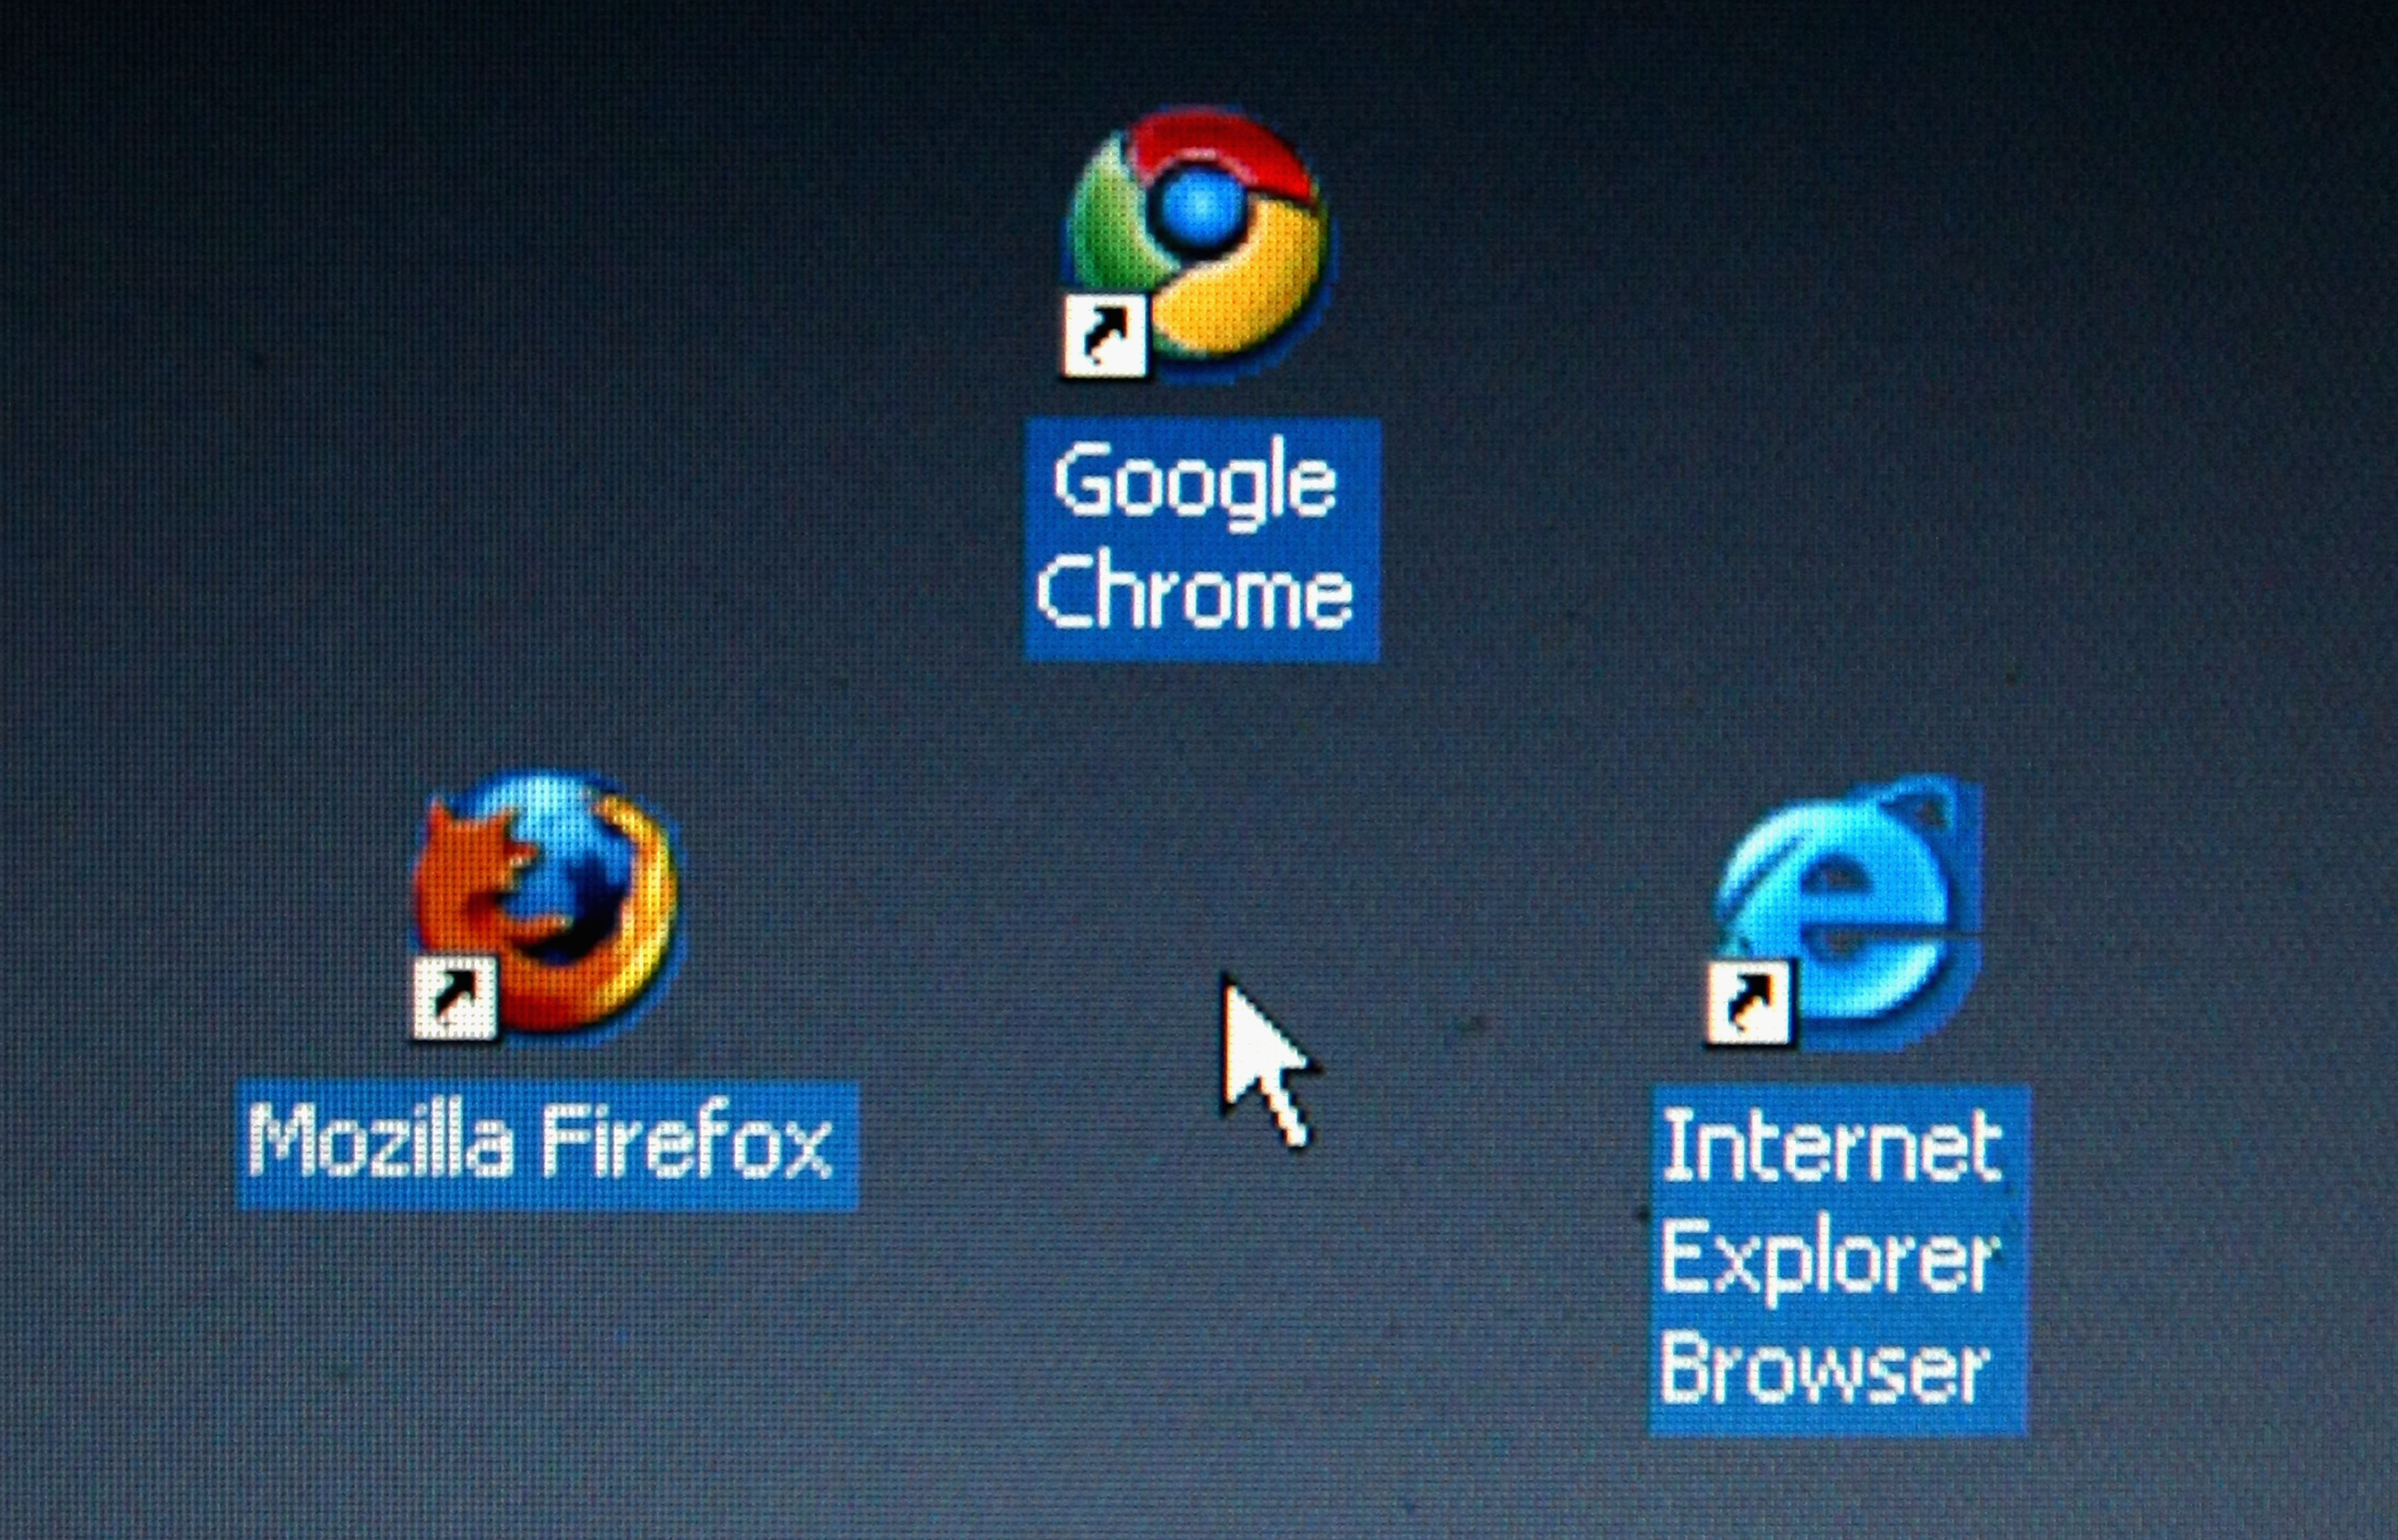 Ако тенденцията IE да губи потребители се запази, Chrome може да заеме лидерската позиция през 2012